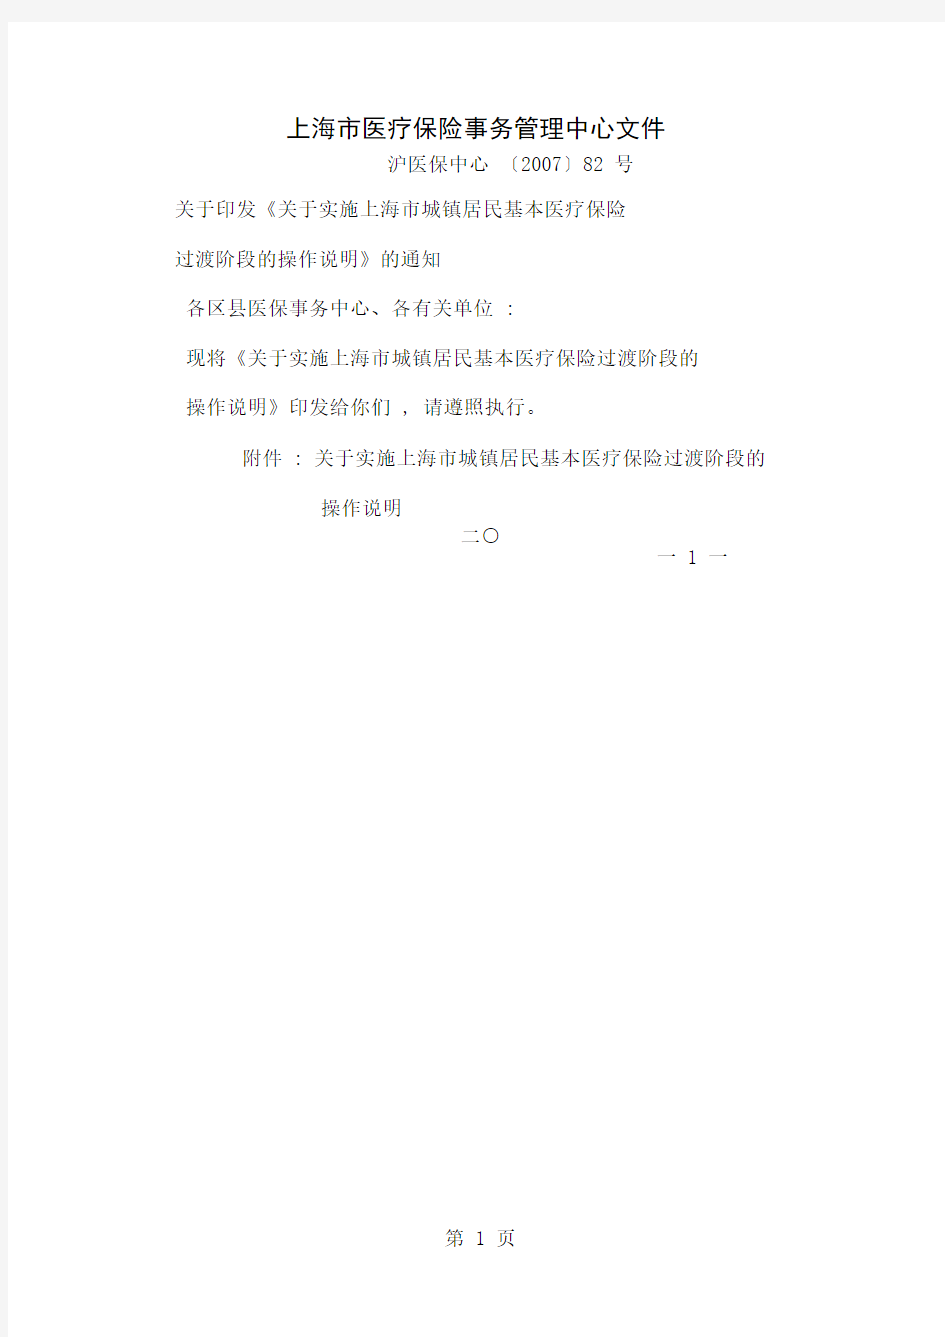 上海市医疗保险事务管理中心文件-6页文档资料